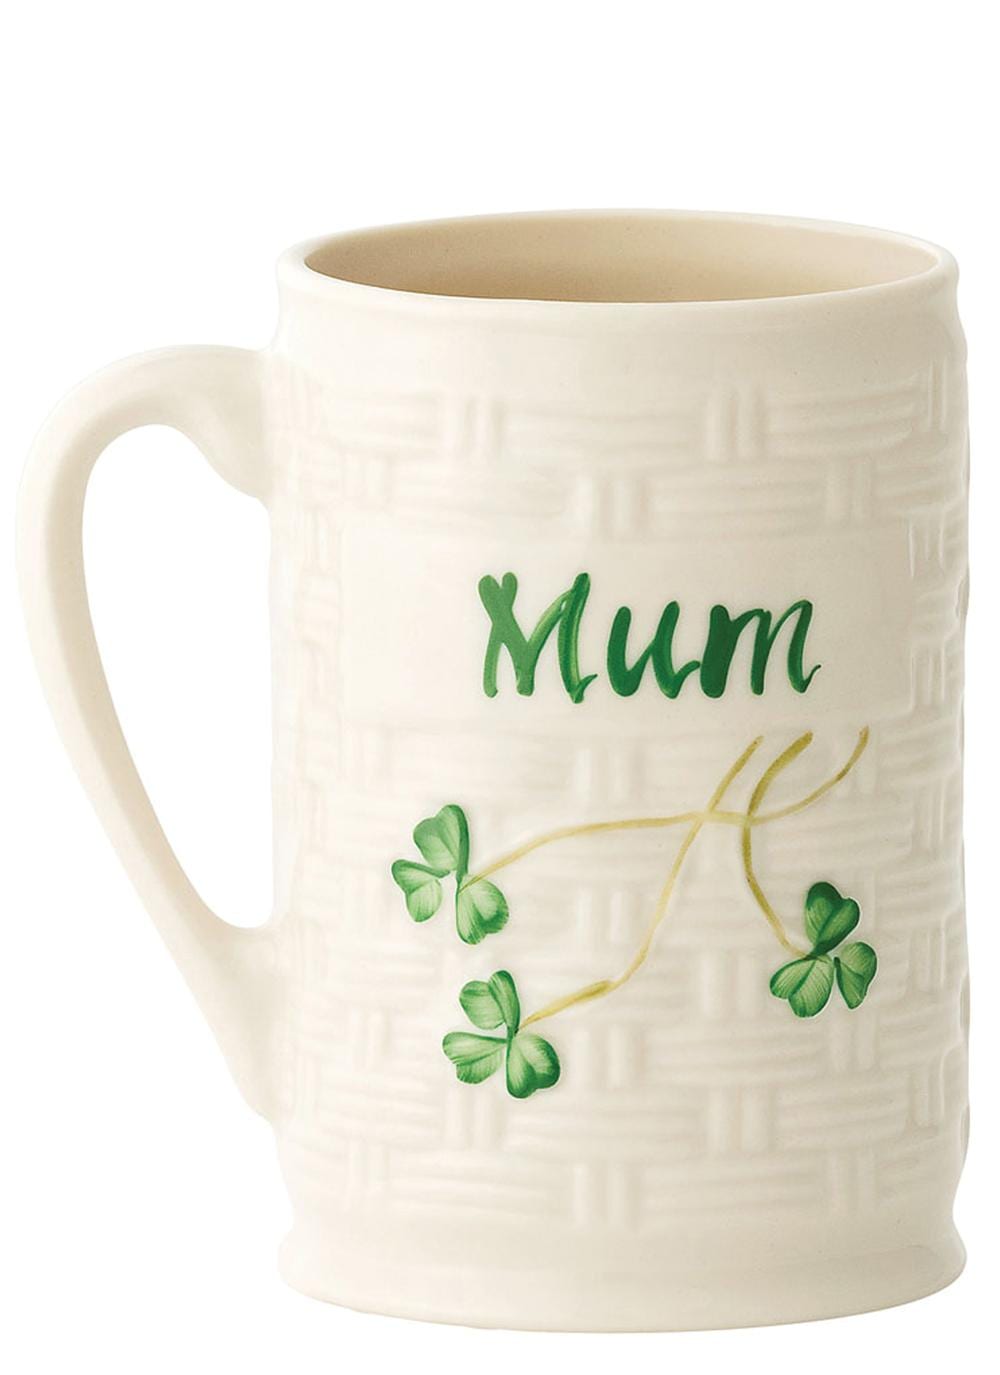 Belleek Mum Mug, US$29